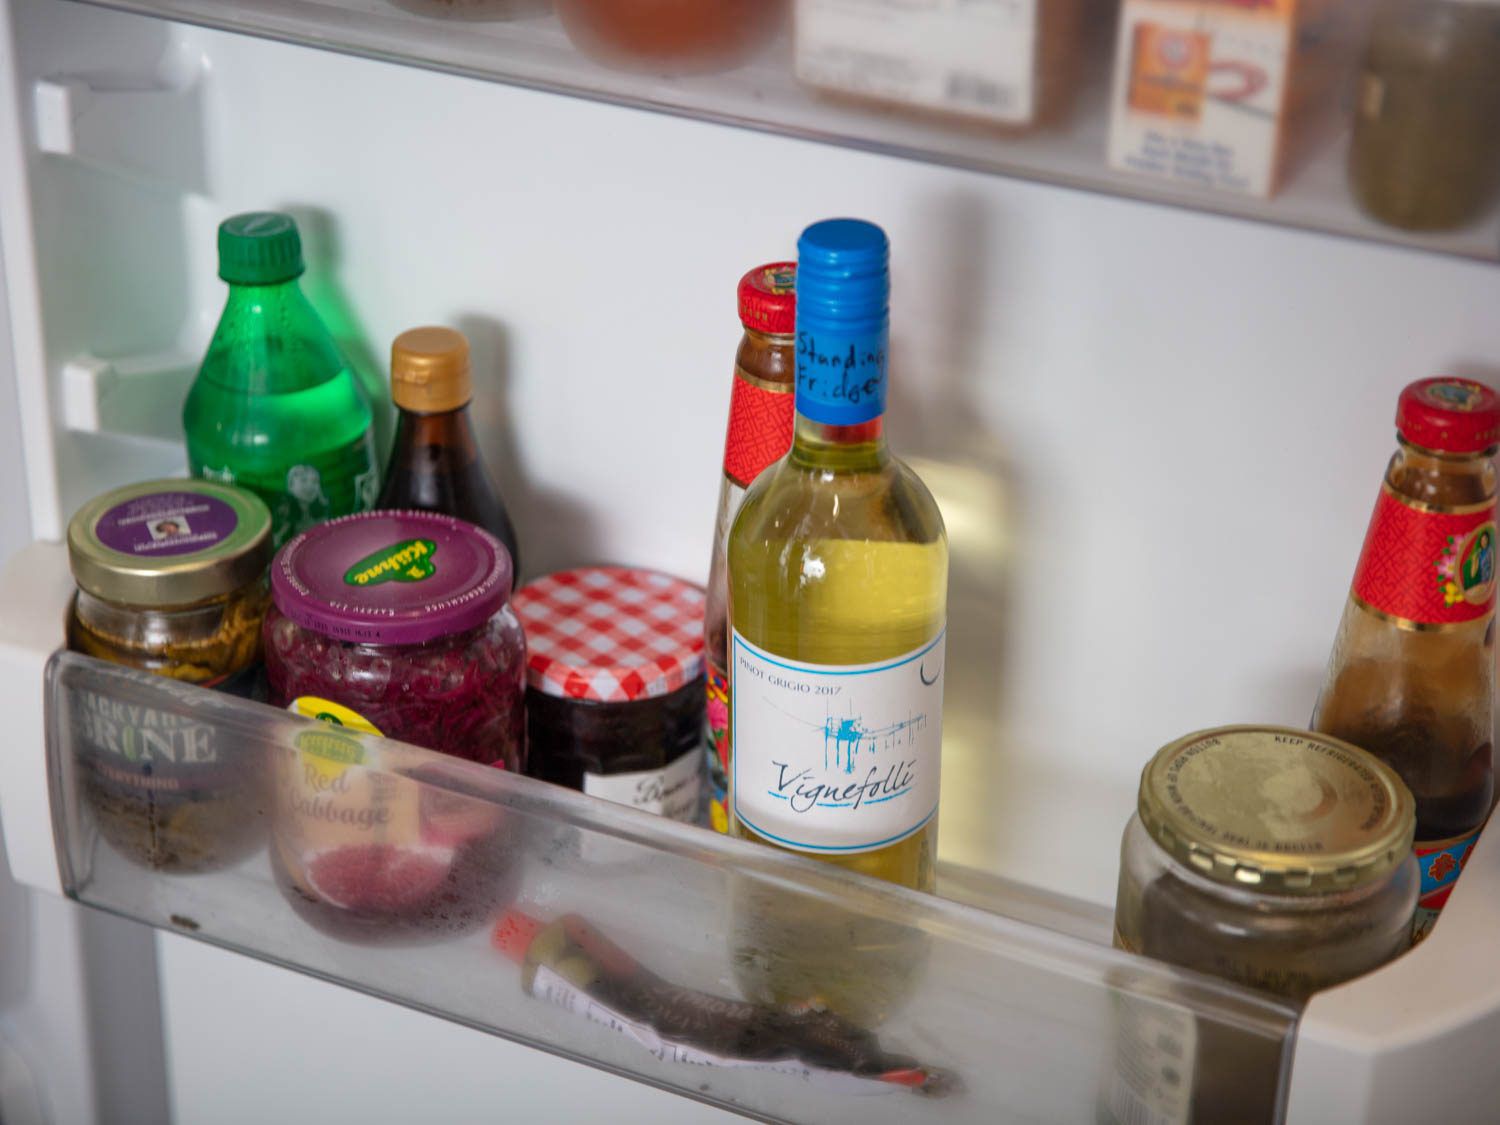 冰箱门上竖着一瓶白葡萄酒，旁边是一罐果酱和其他罐头食品